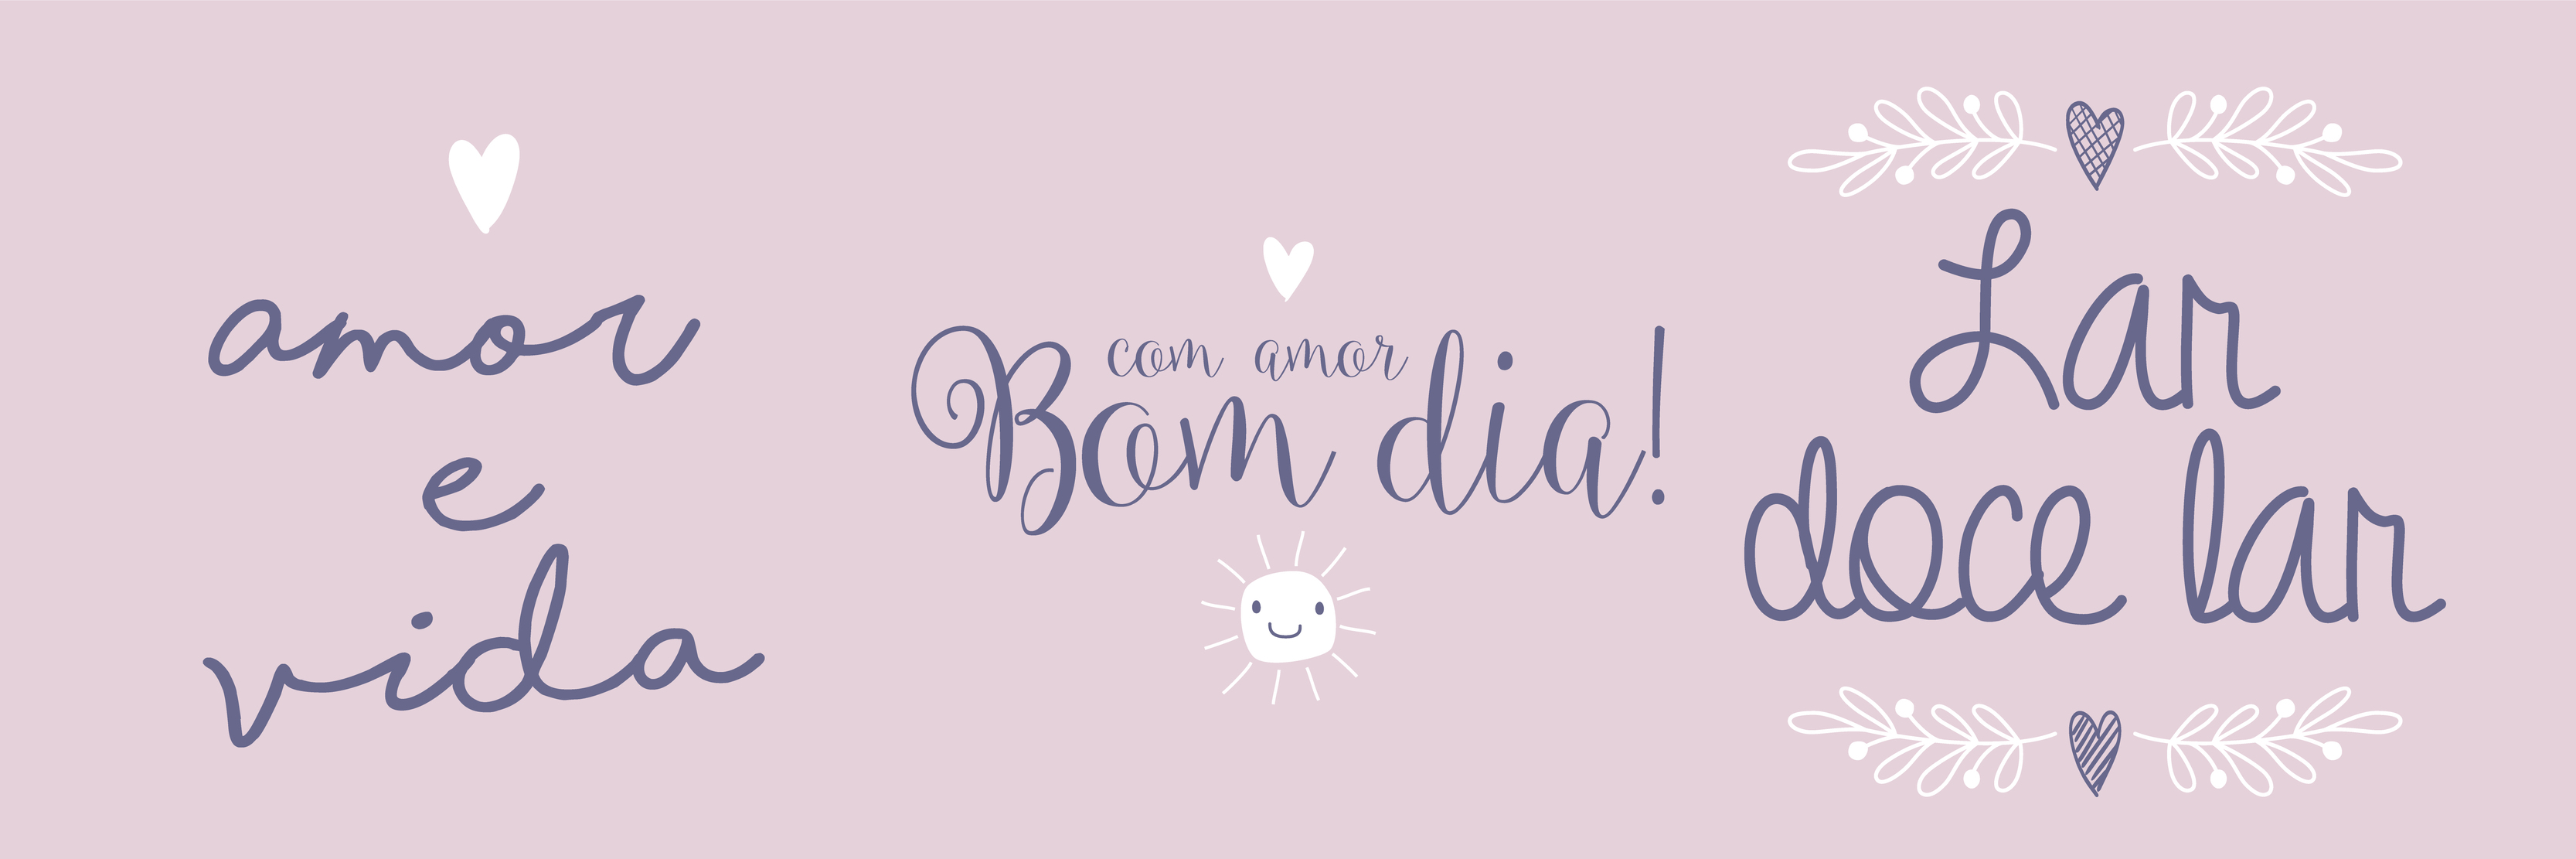 três frases de gentileza em português brasileiro. tradução - amor e vida -  adorável bom dia - lar doce lar 4450798 Vetor no Vecteezy